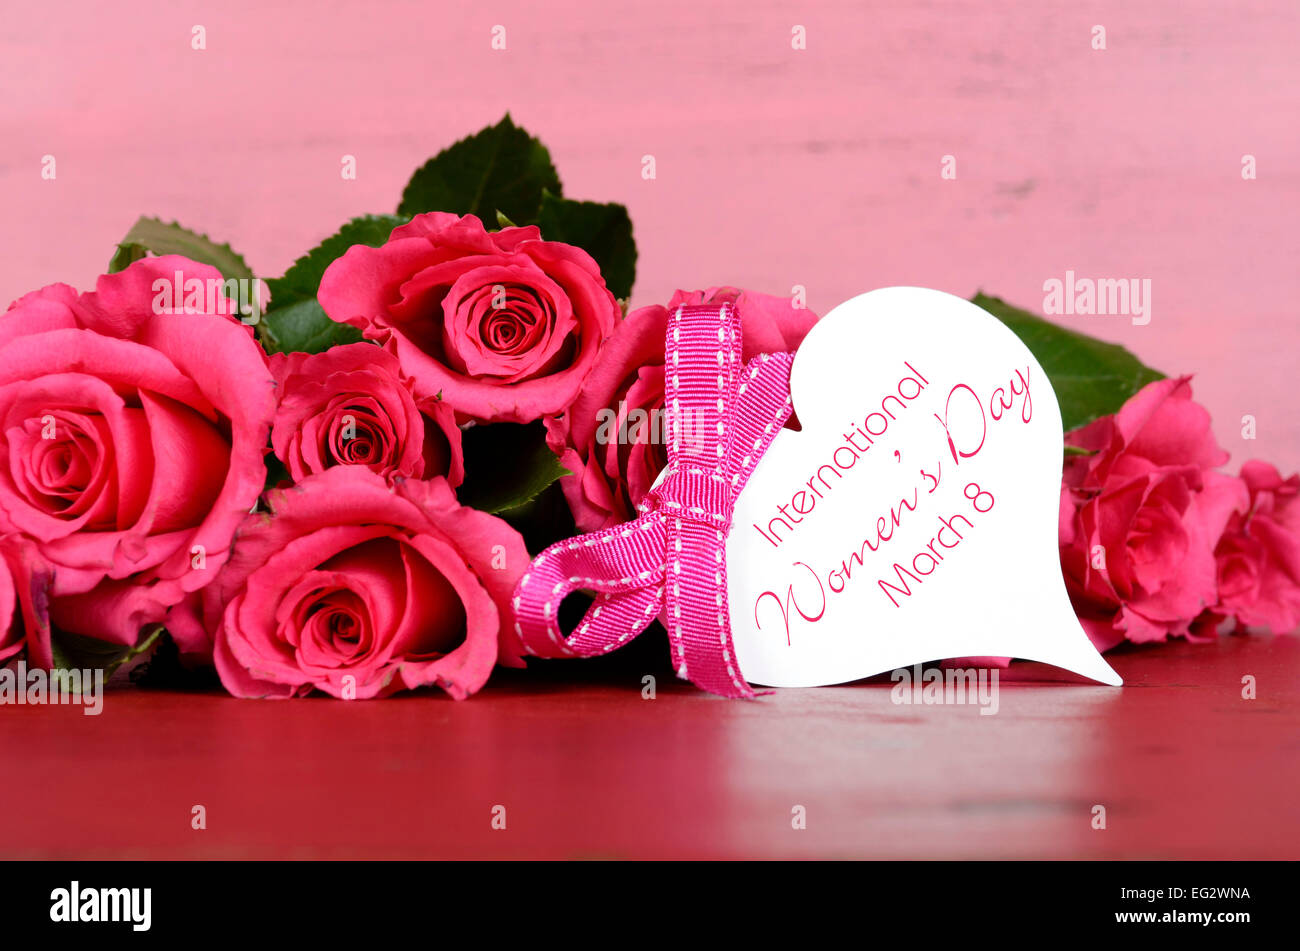 La Journée internationale des femmes, le 8 mars, avec des roses rose gift tag message sur fond de bois rose vintage. Banque D'Images